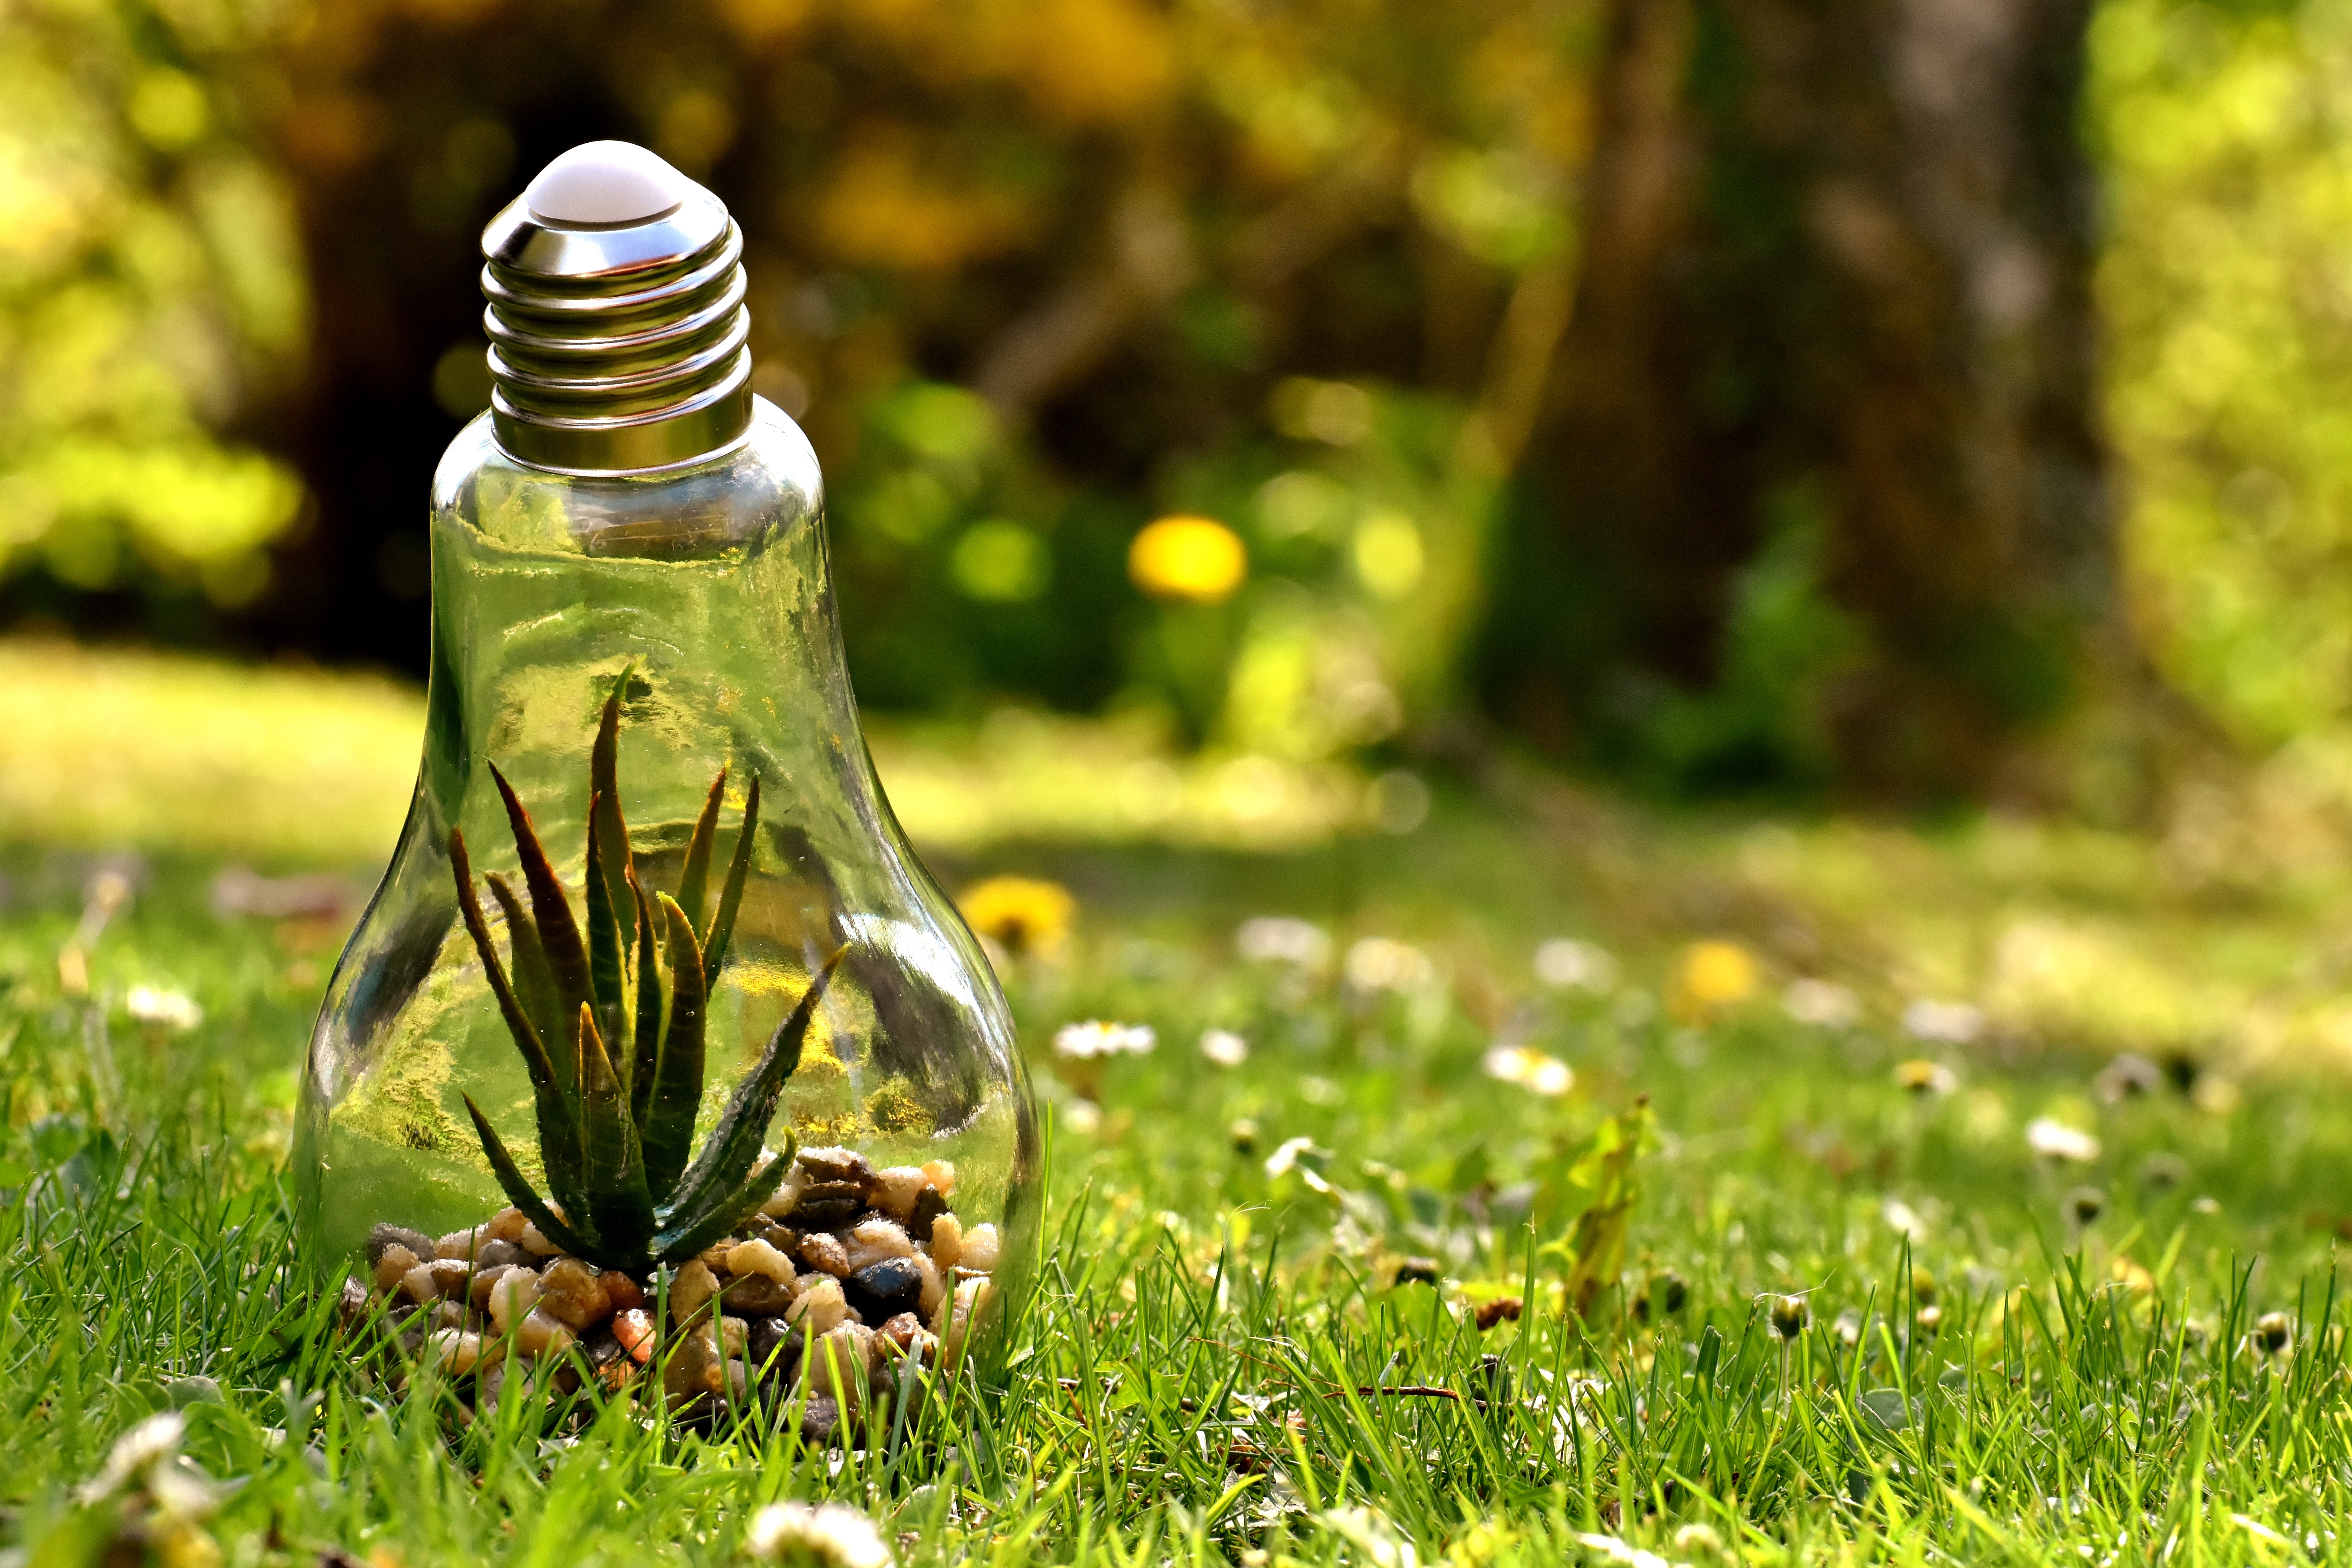 Natural conservation. Природа в лампочке. Экологическая лампочка. Лампочка на траве. Природа в лампе.